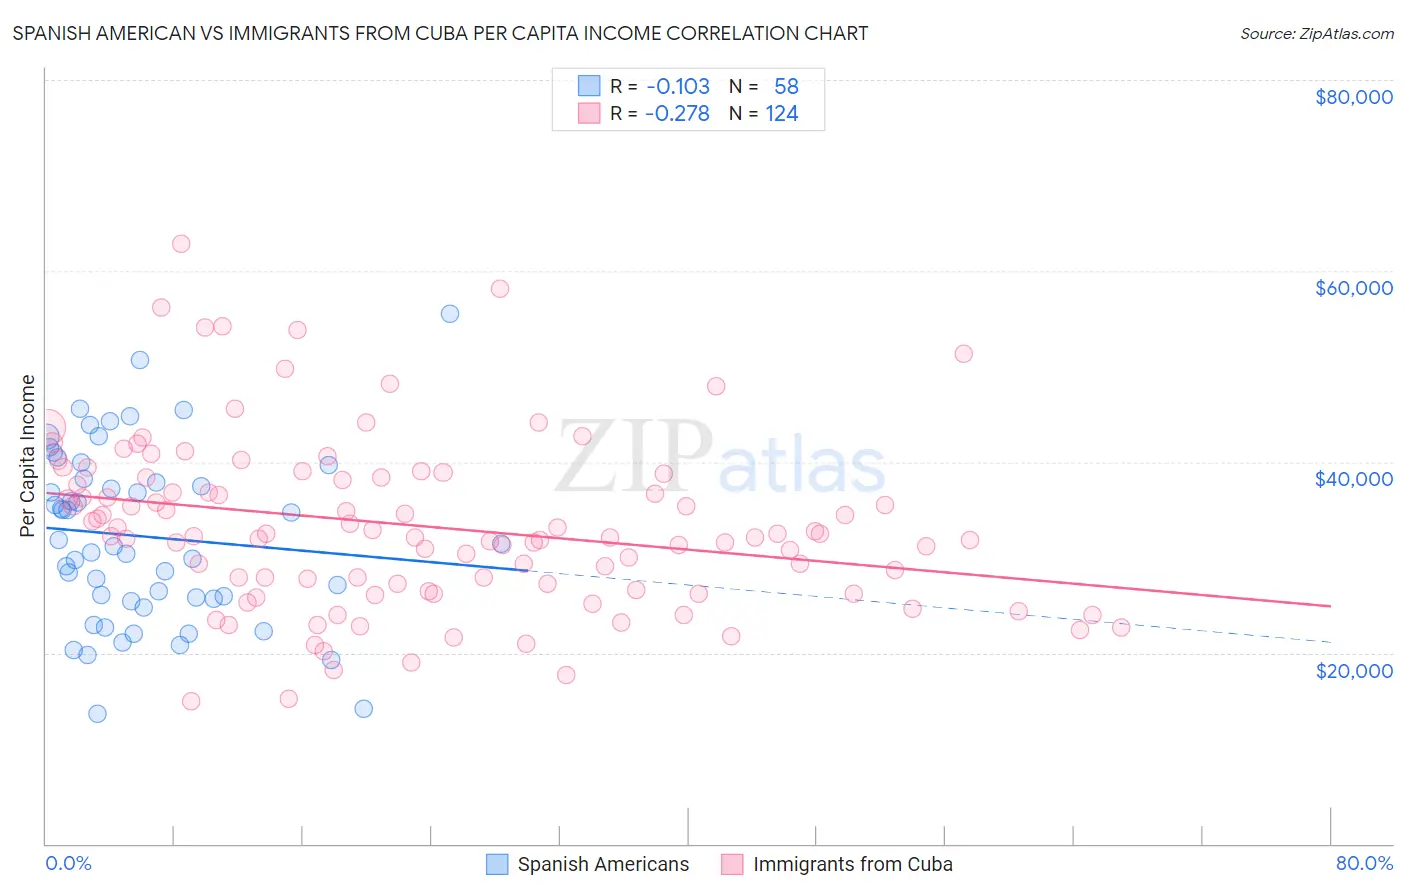 Spanish American vs Immigrants from Cuba Per Capita Income